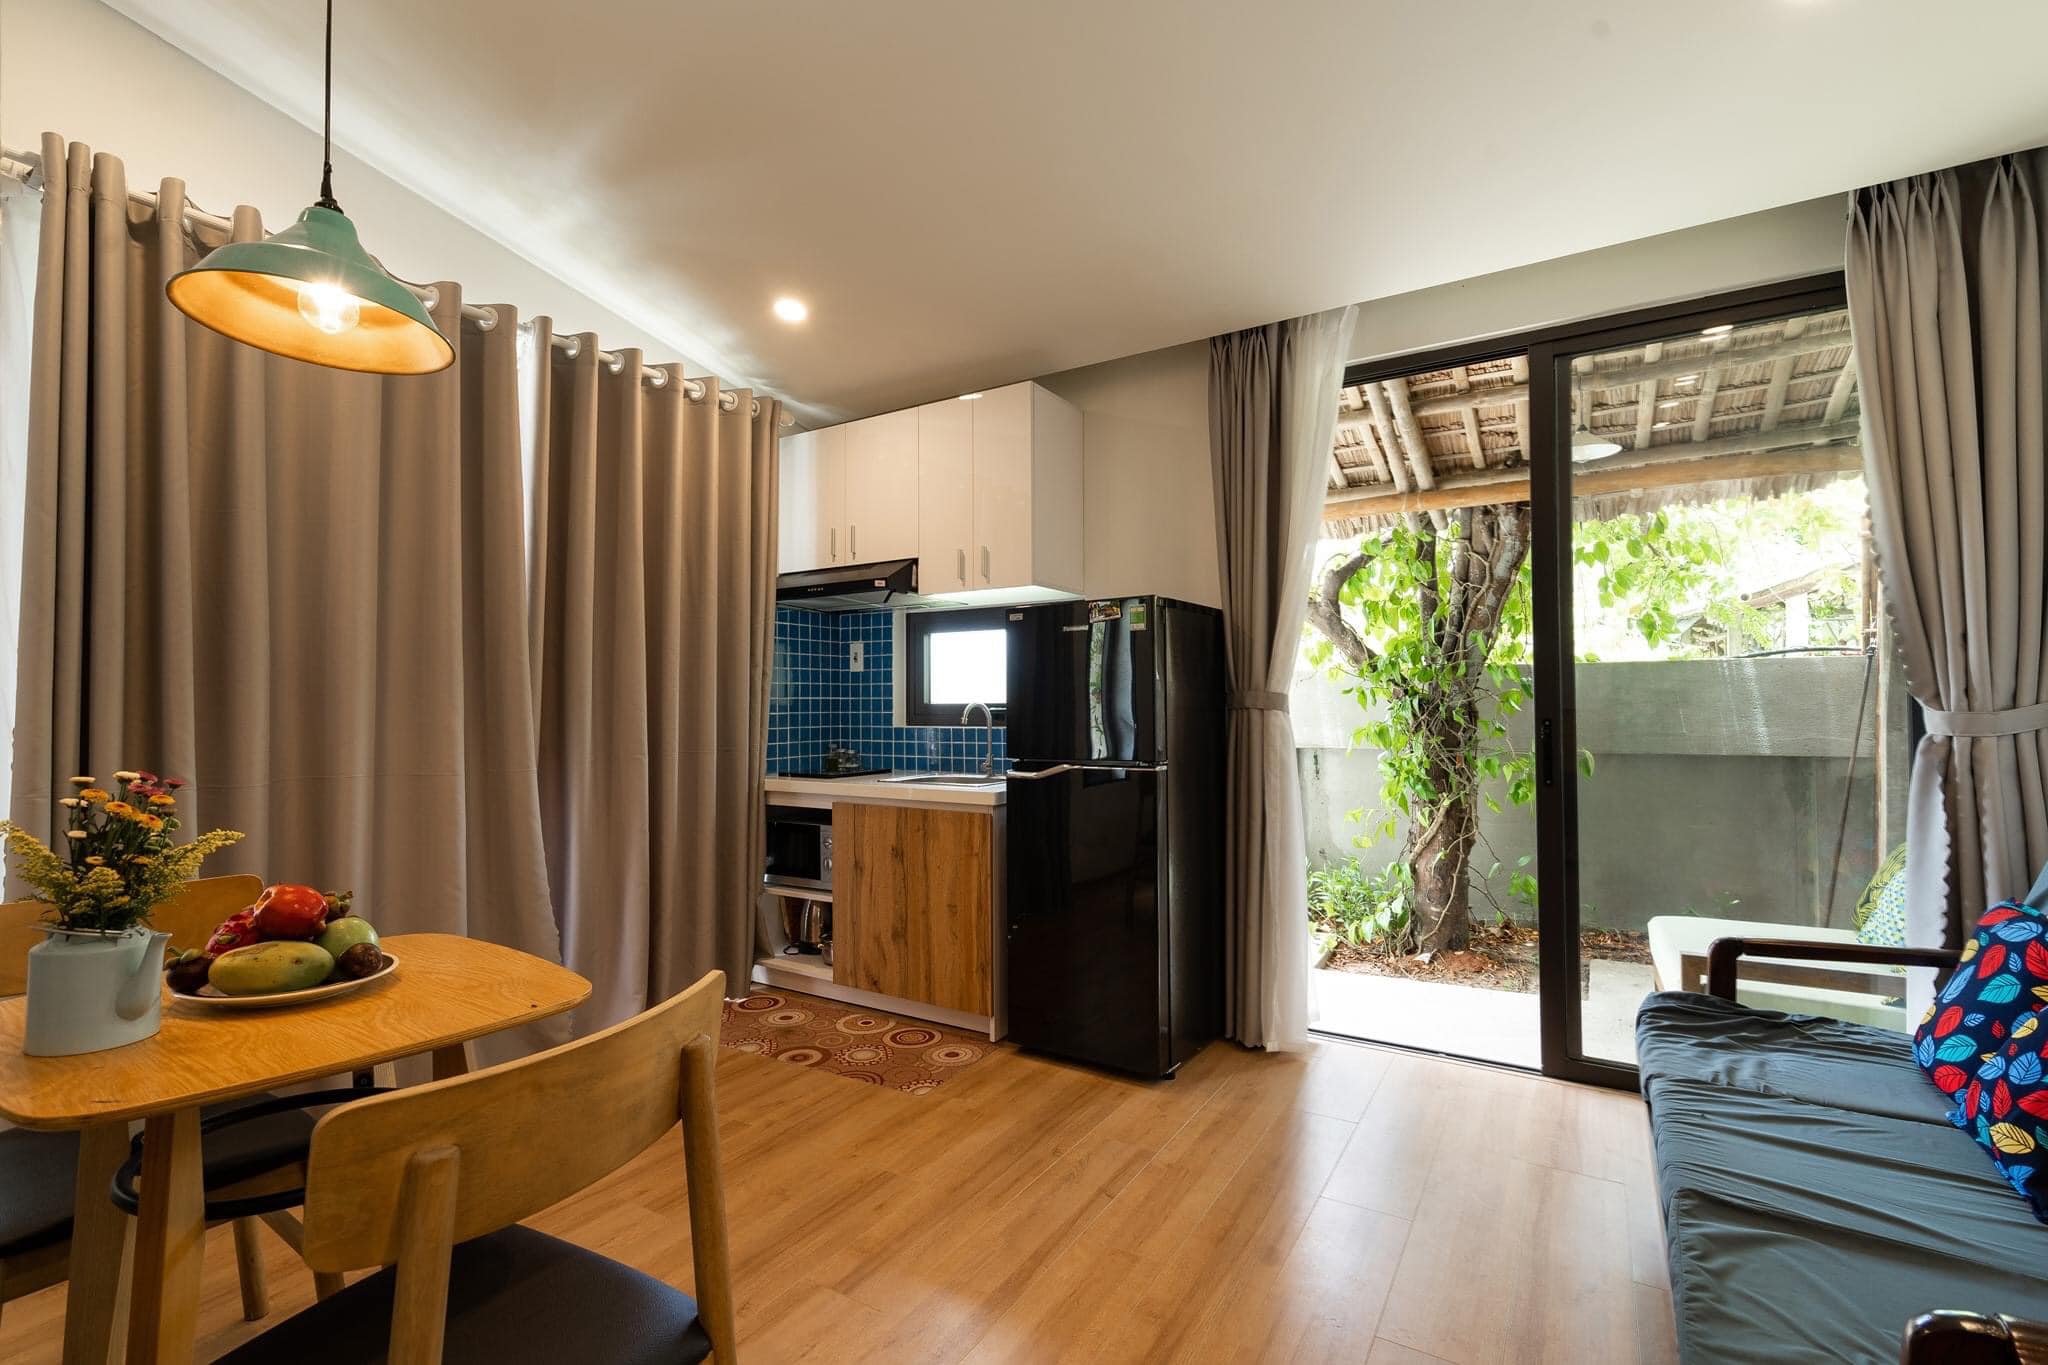 Nội thất căn nhà 1 tầng được thiết kế đơn giản tinh tế với chất liệu gỗ tự nhiên tông màu ấm cũng nhẹ nhàng